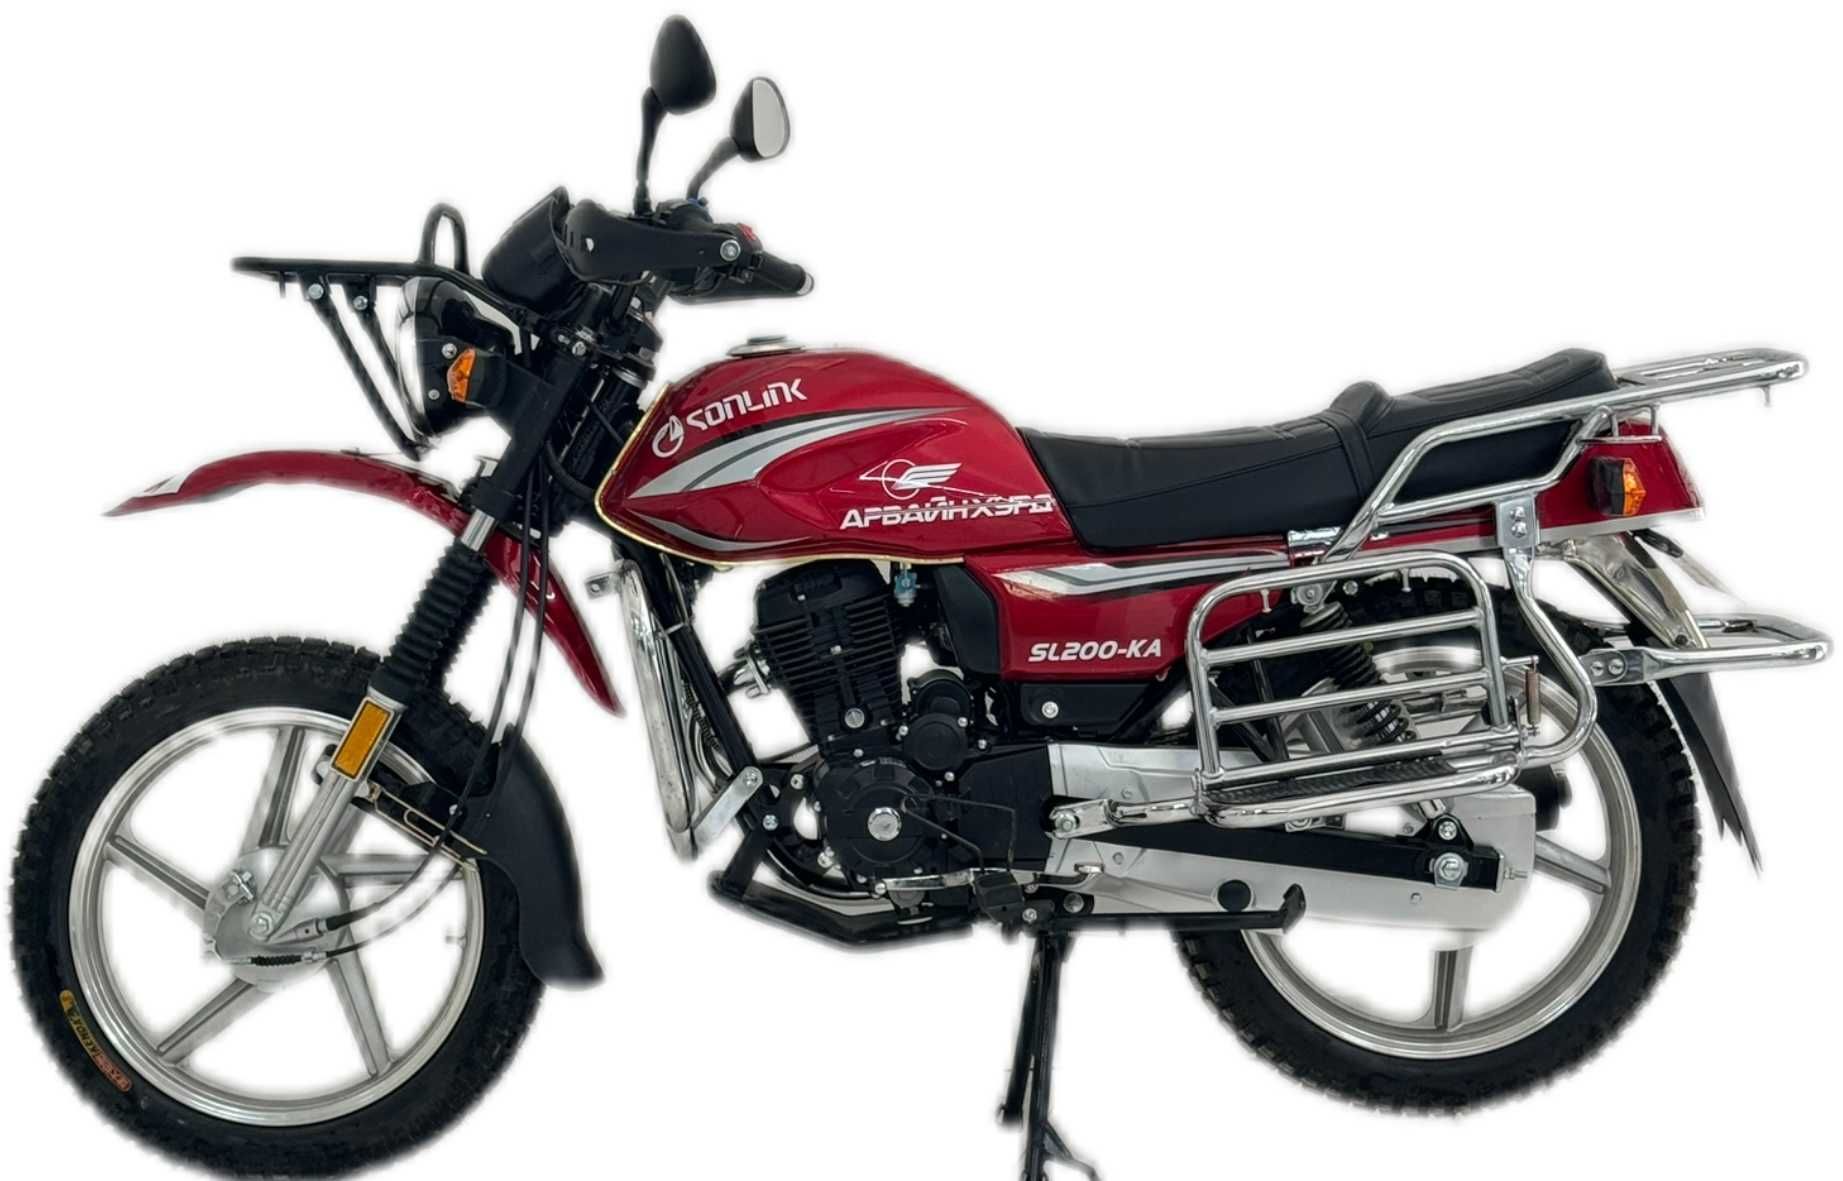 Мотоцикл Sonlink 200CC Original; Оригинал мотоцикл Сонлинк 200